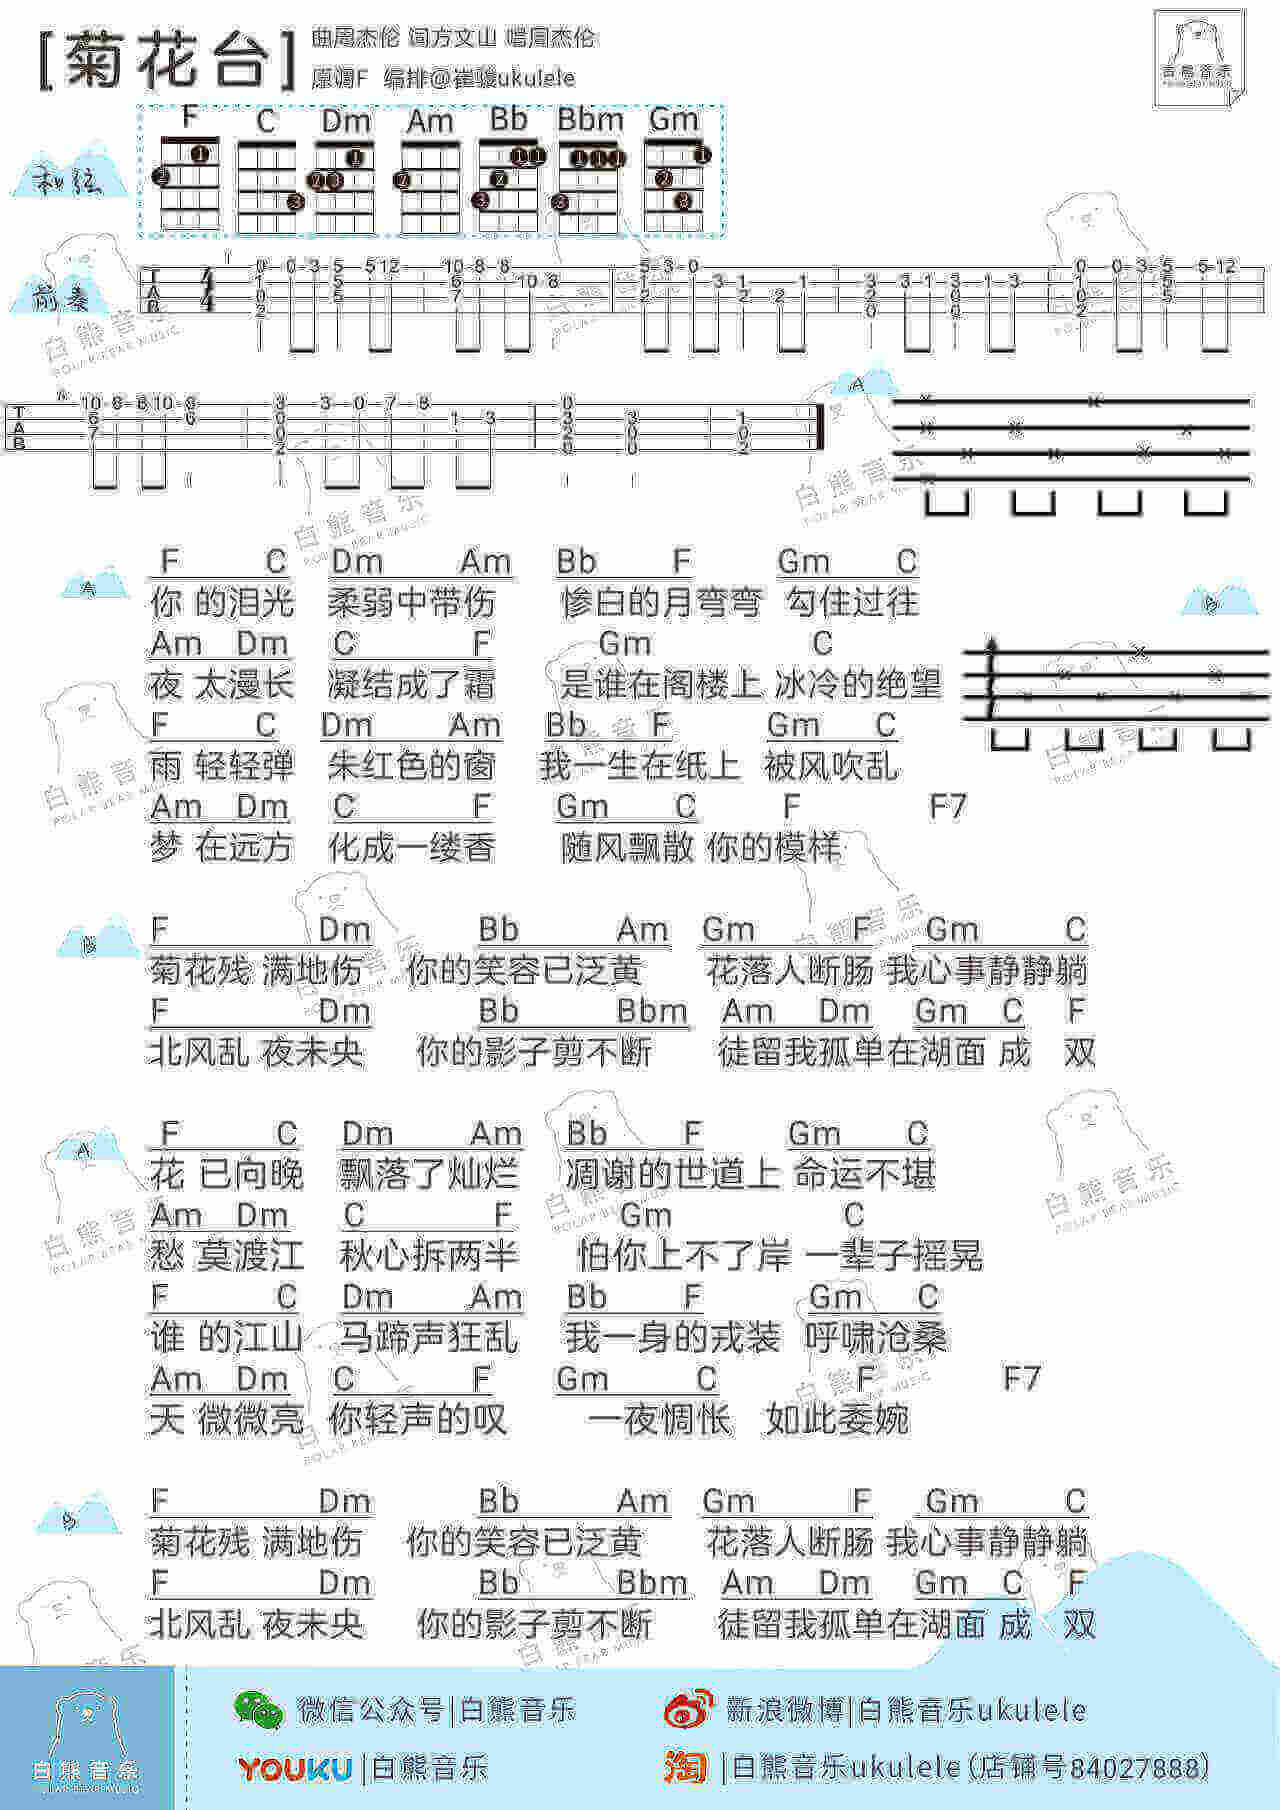 菊花台 – 周杰伦 ukulele曲谱插图2